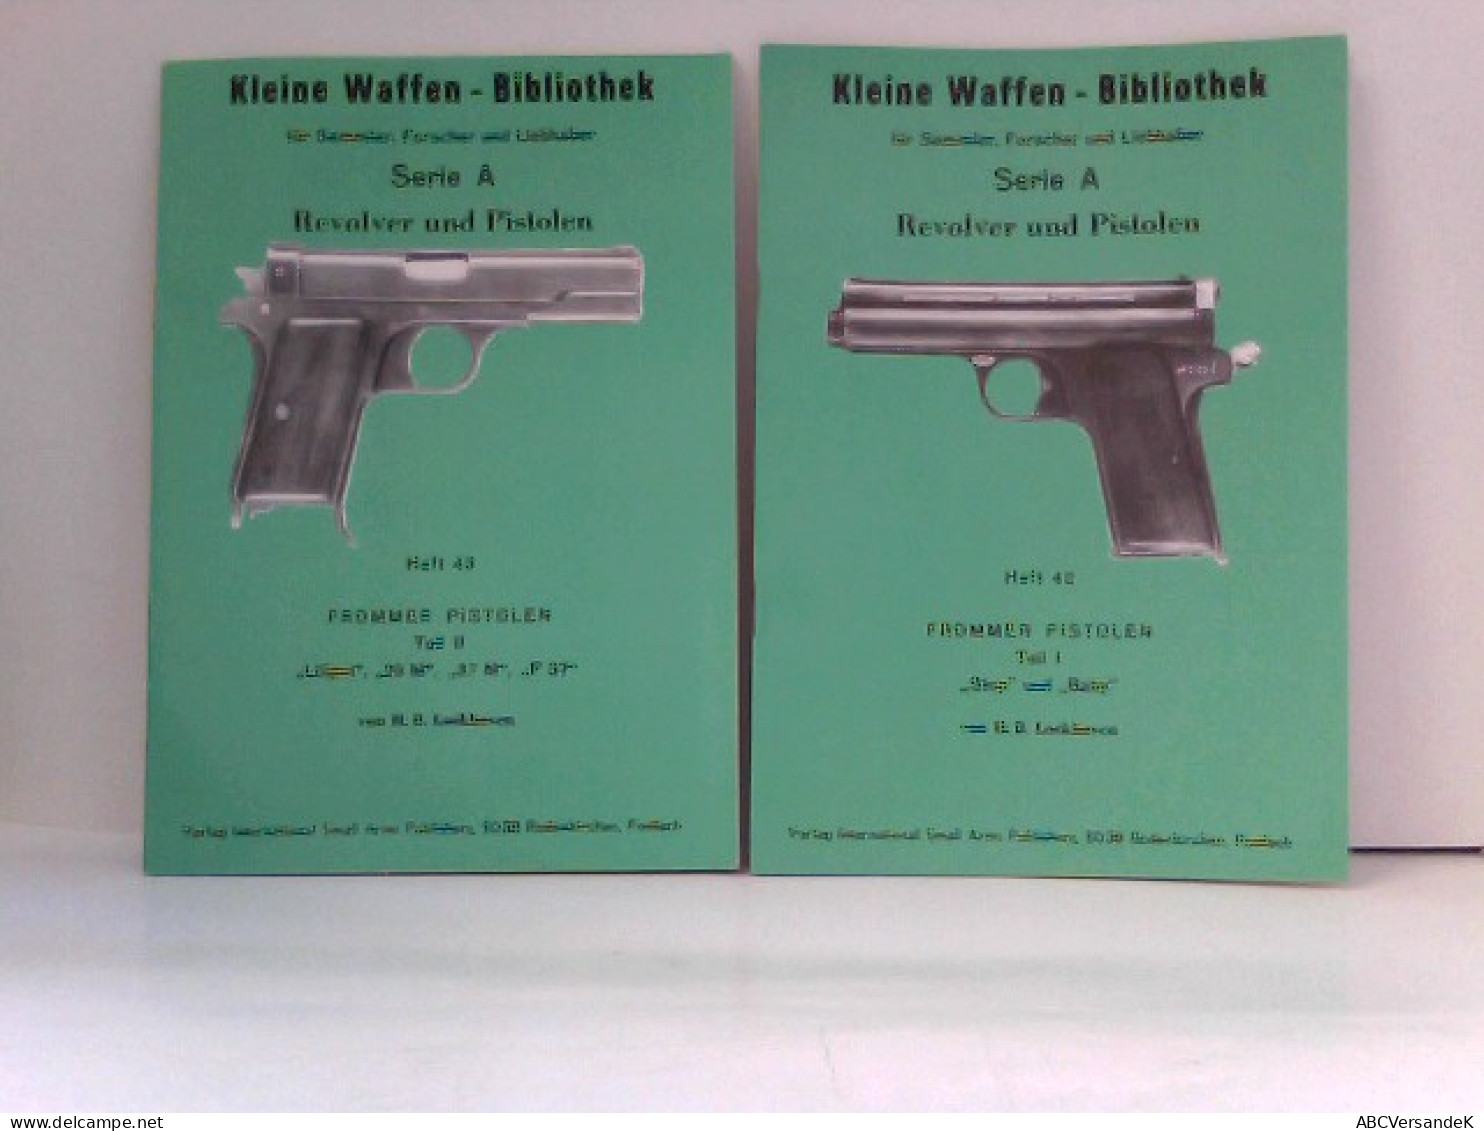 KONVOLUT Frommer Pistolen, Kleine Waffen - Bibliothek Für Sammler, Forscher Und Liebhaber - Heft 42 & Heft 43 - Police & Militaire